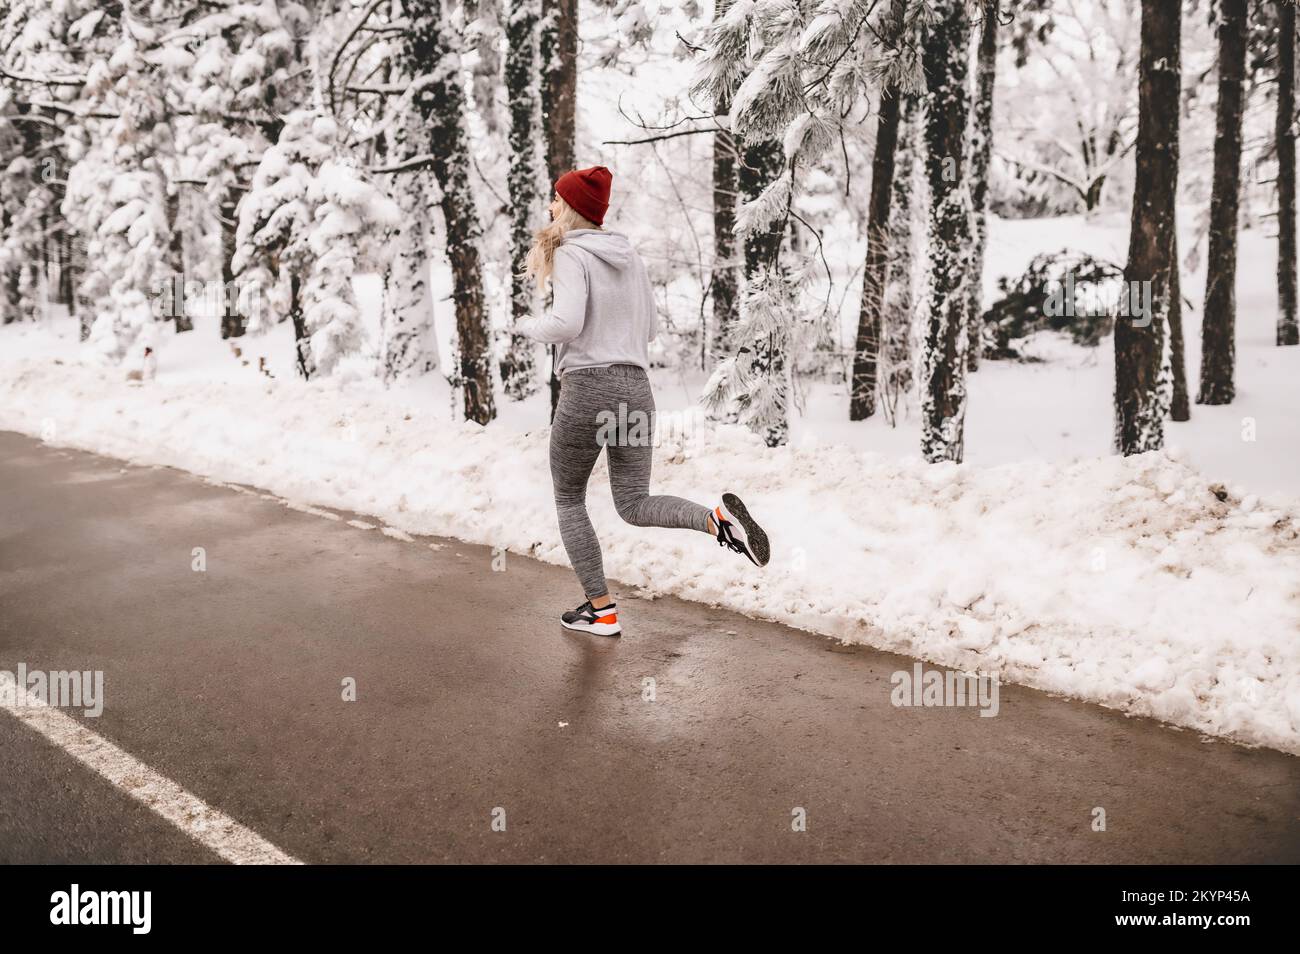 Jeune femme sportive qui s'échauffe avant son entraînement d'hiver pendant une journée ensoleillée et enneigée Banque D'Images